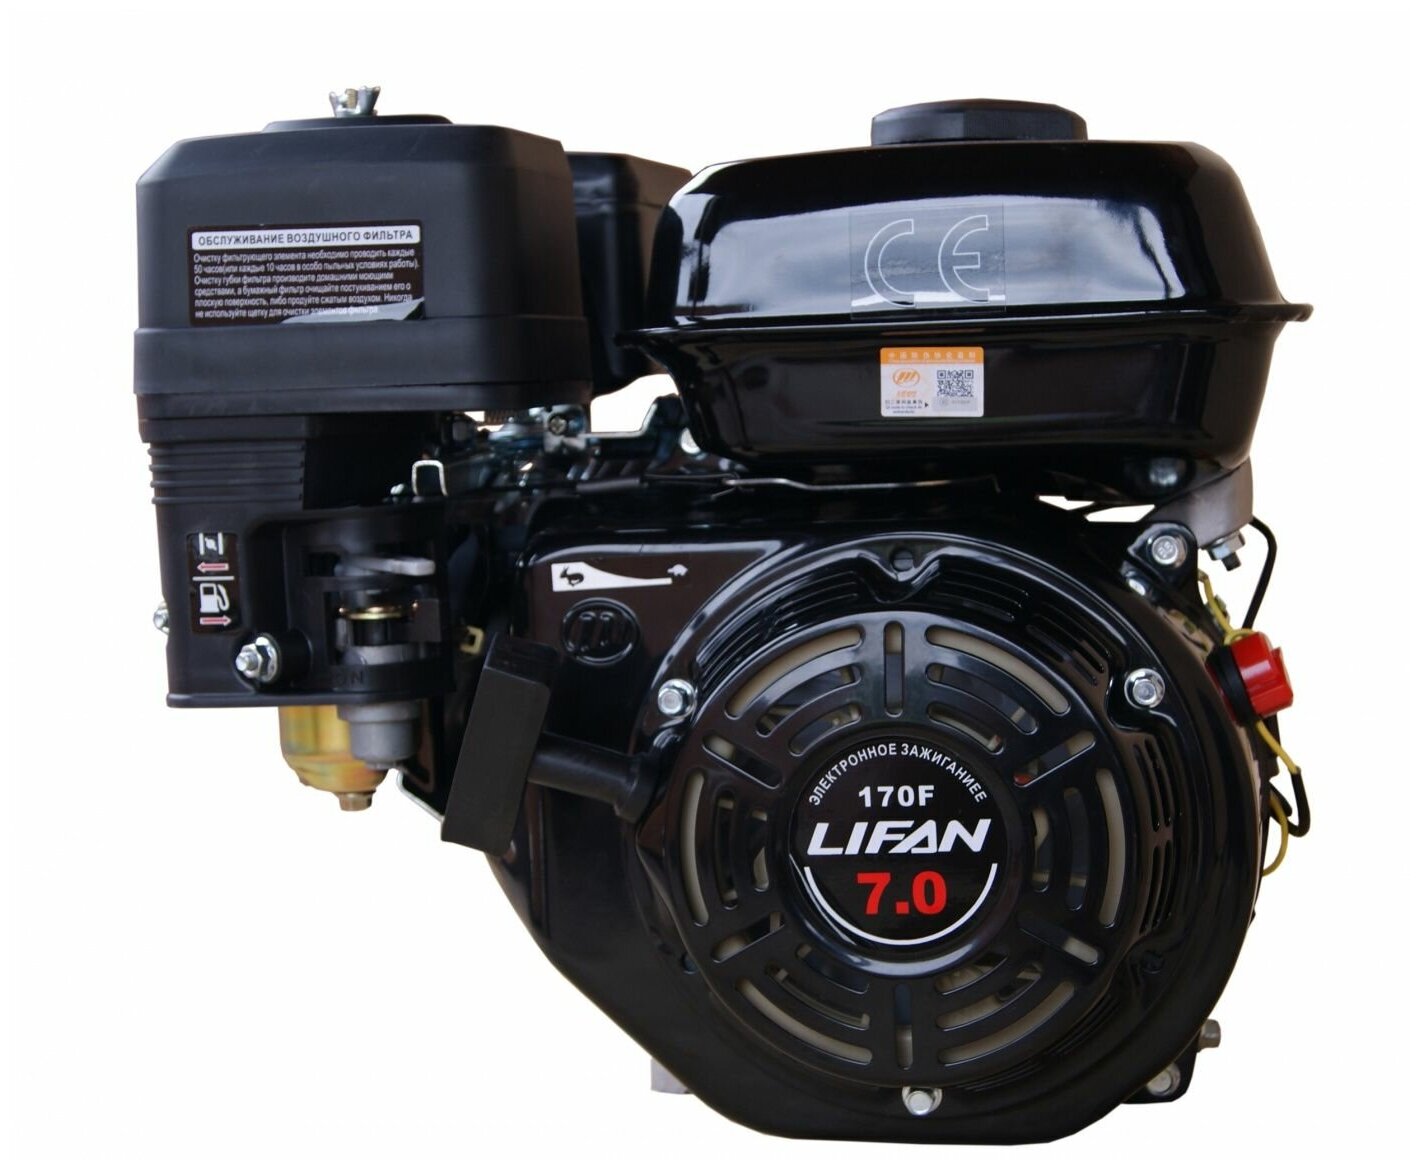 Двигатель LIFAN 170F (7 л. с 4-хтактный одноцилиндровый с воздушным охлаждением вал 19 мм объем 212см³ ручная система запуска вес 16 кг)